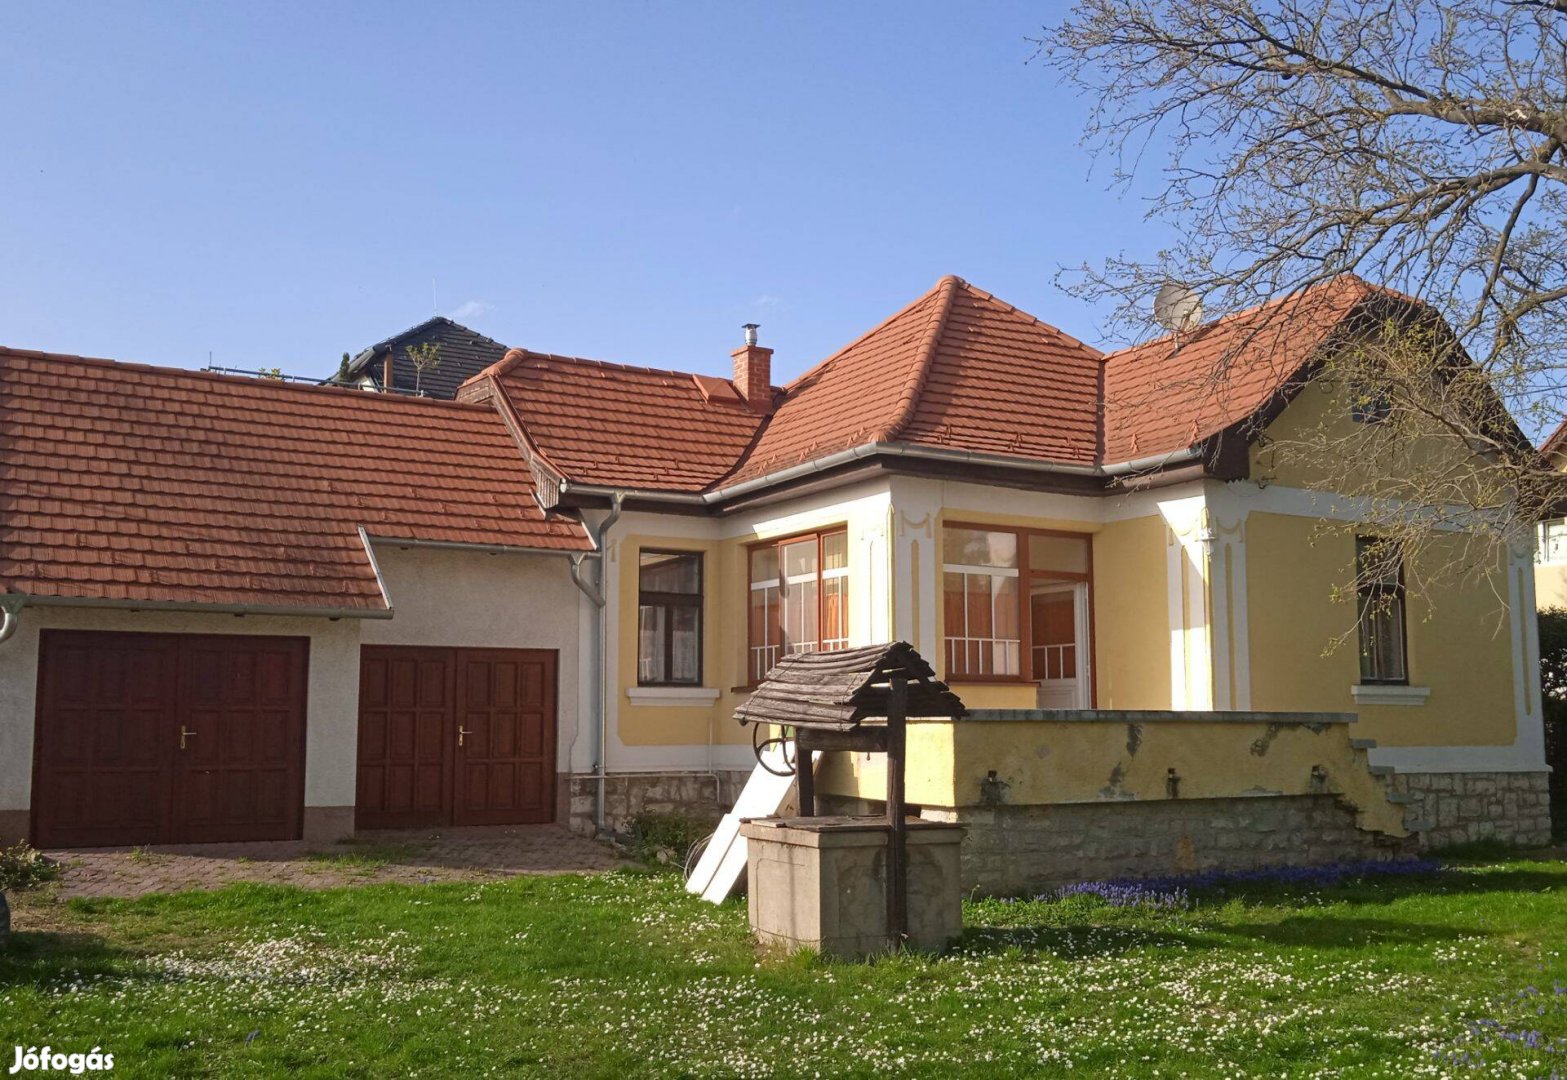 Eladó családi ház Balatonfüred központjában